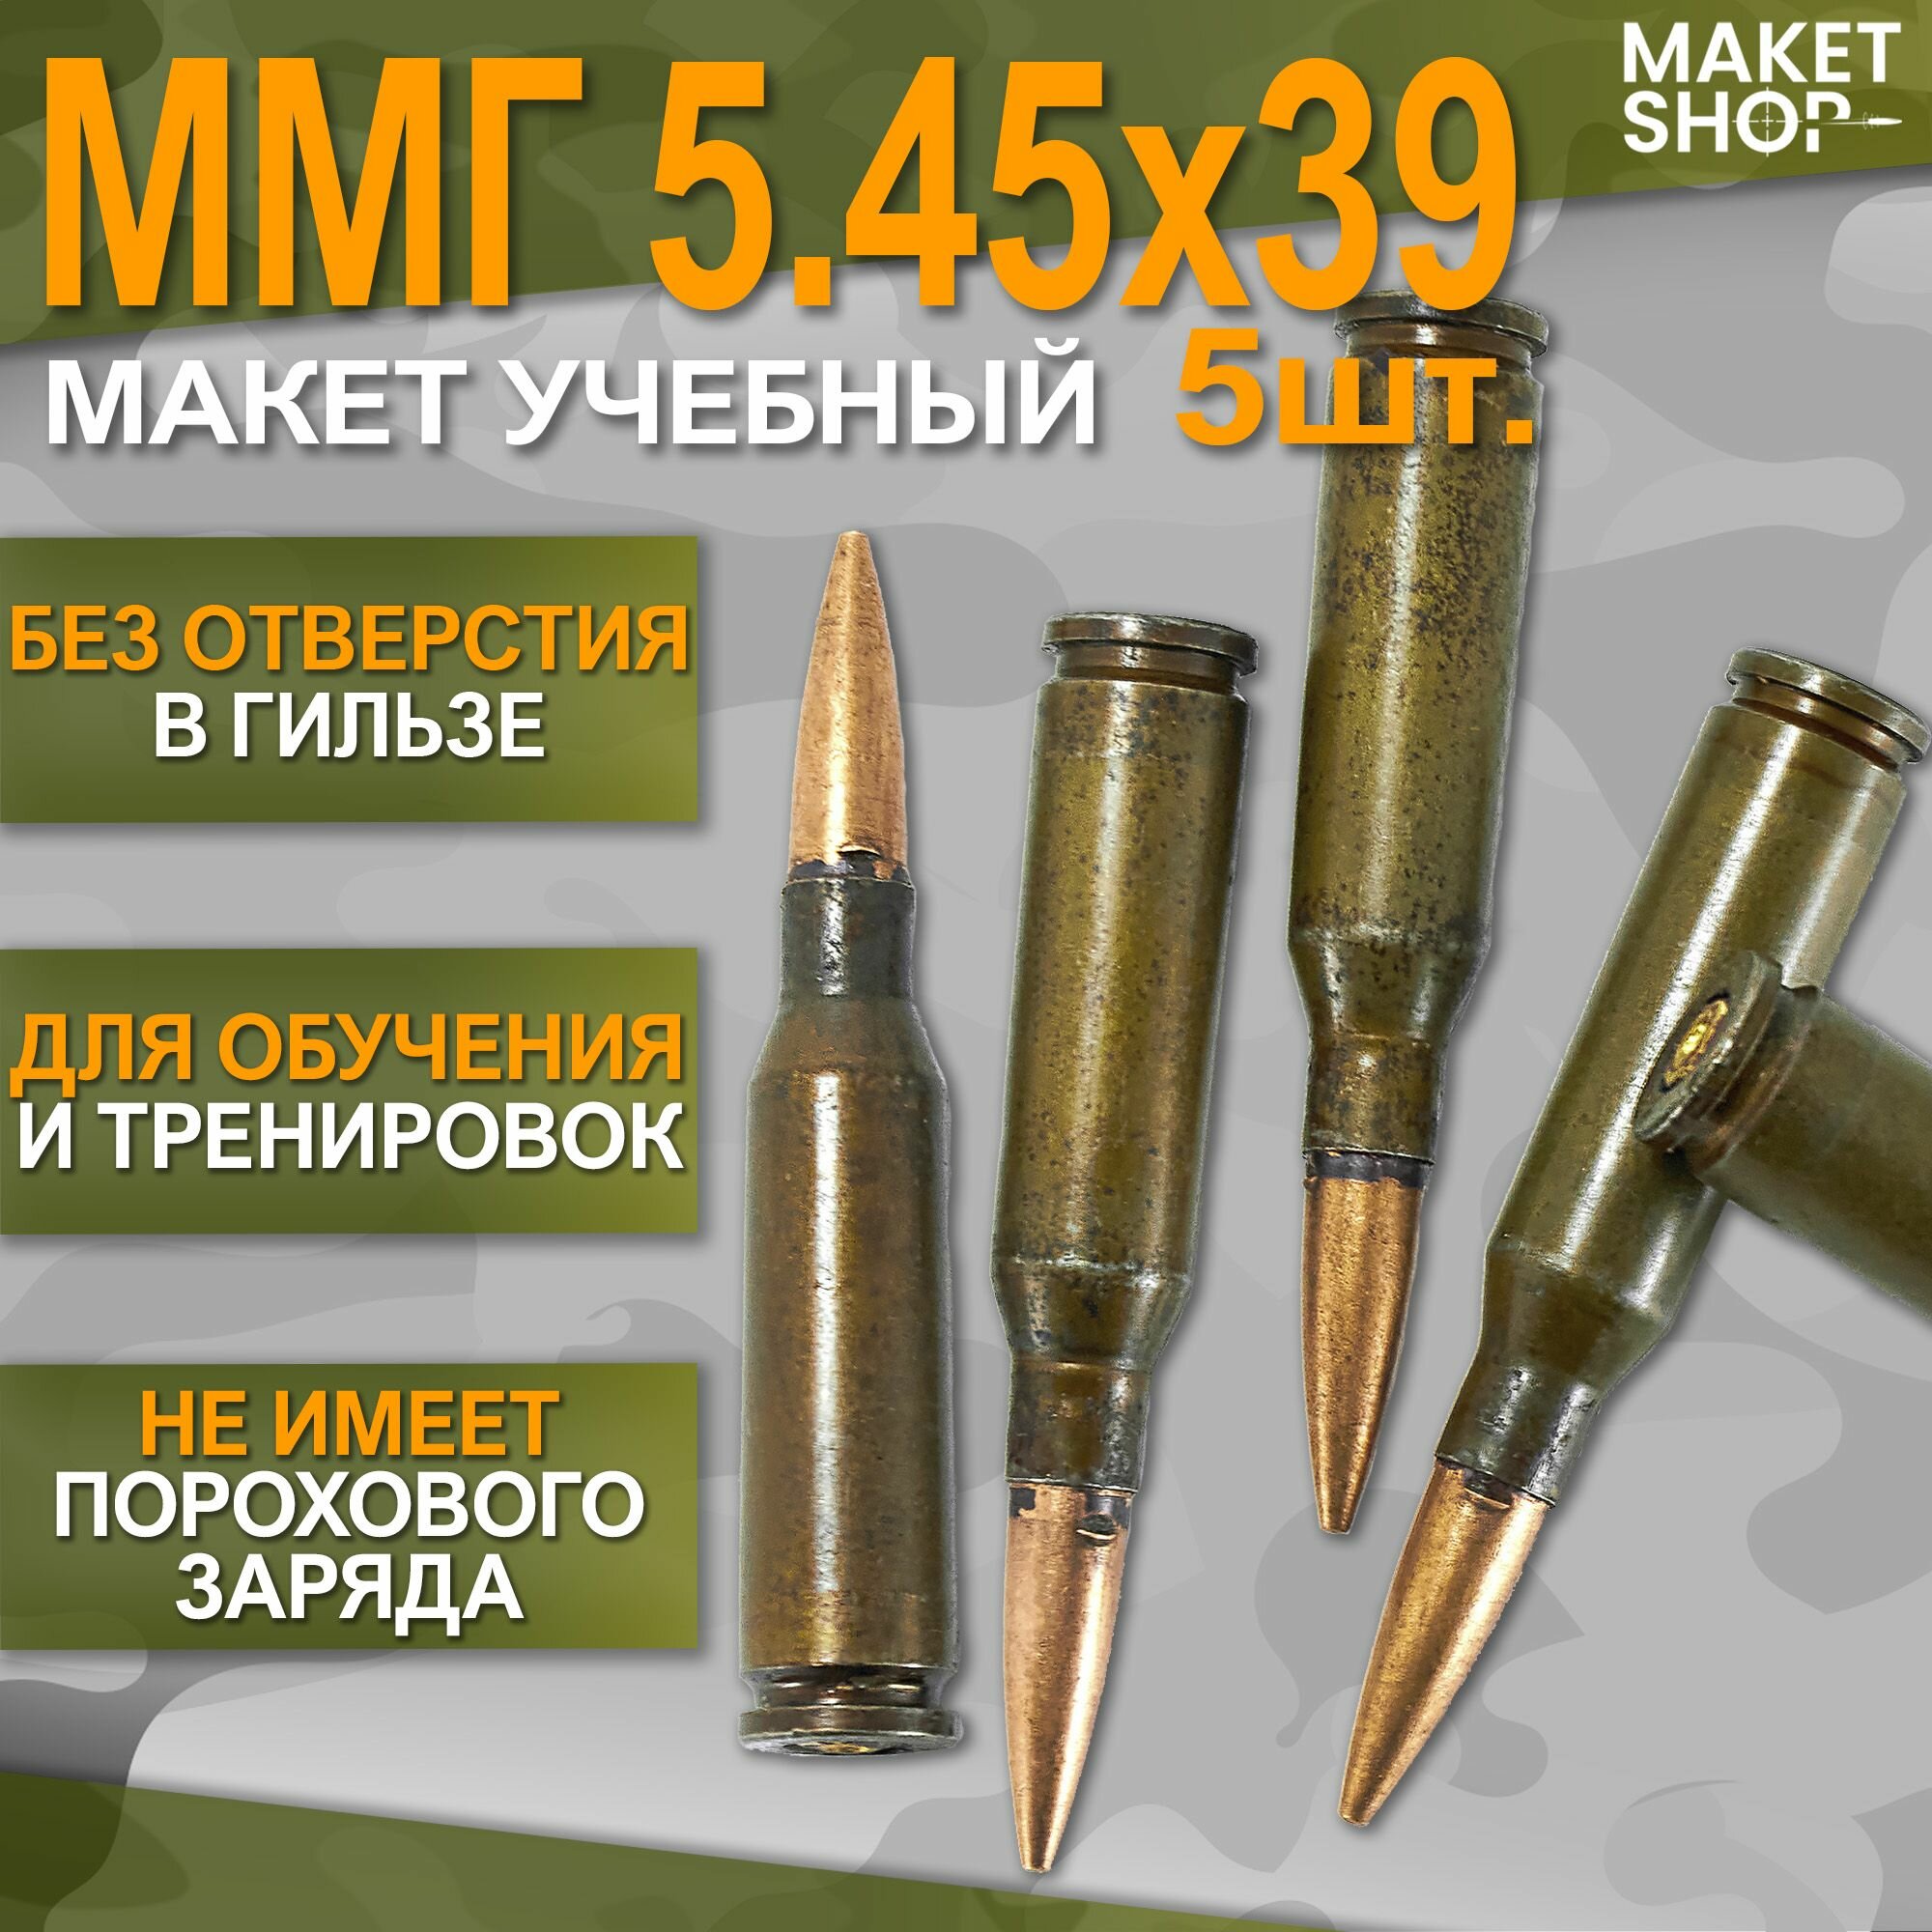 Учебный ММГ макет патрона 545x39 (АК-74) 5 шт.